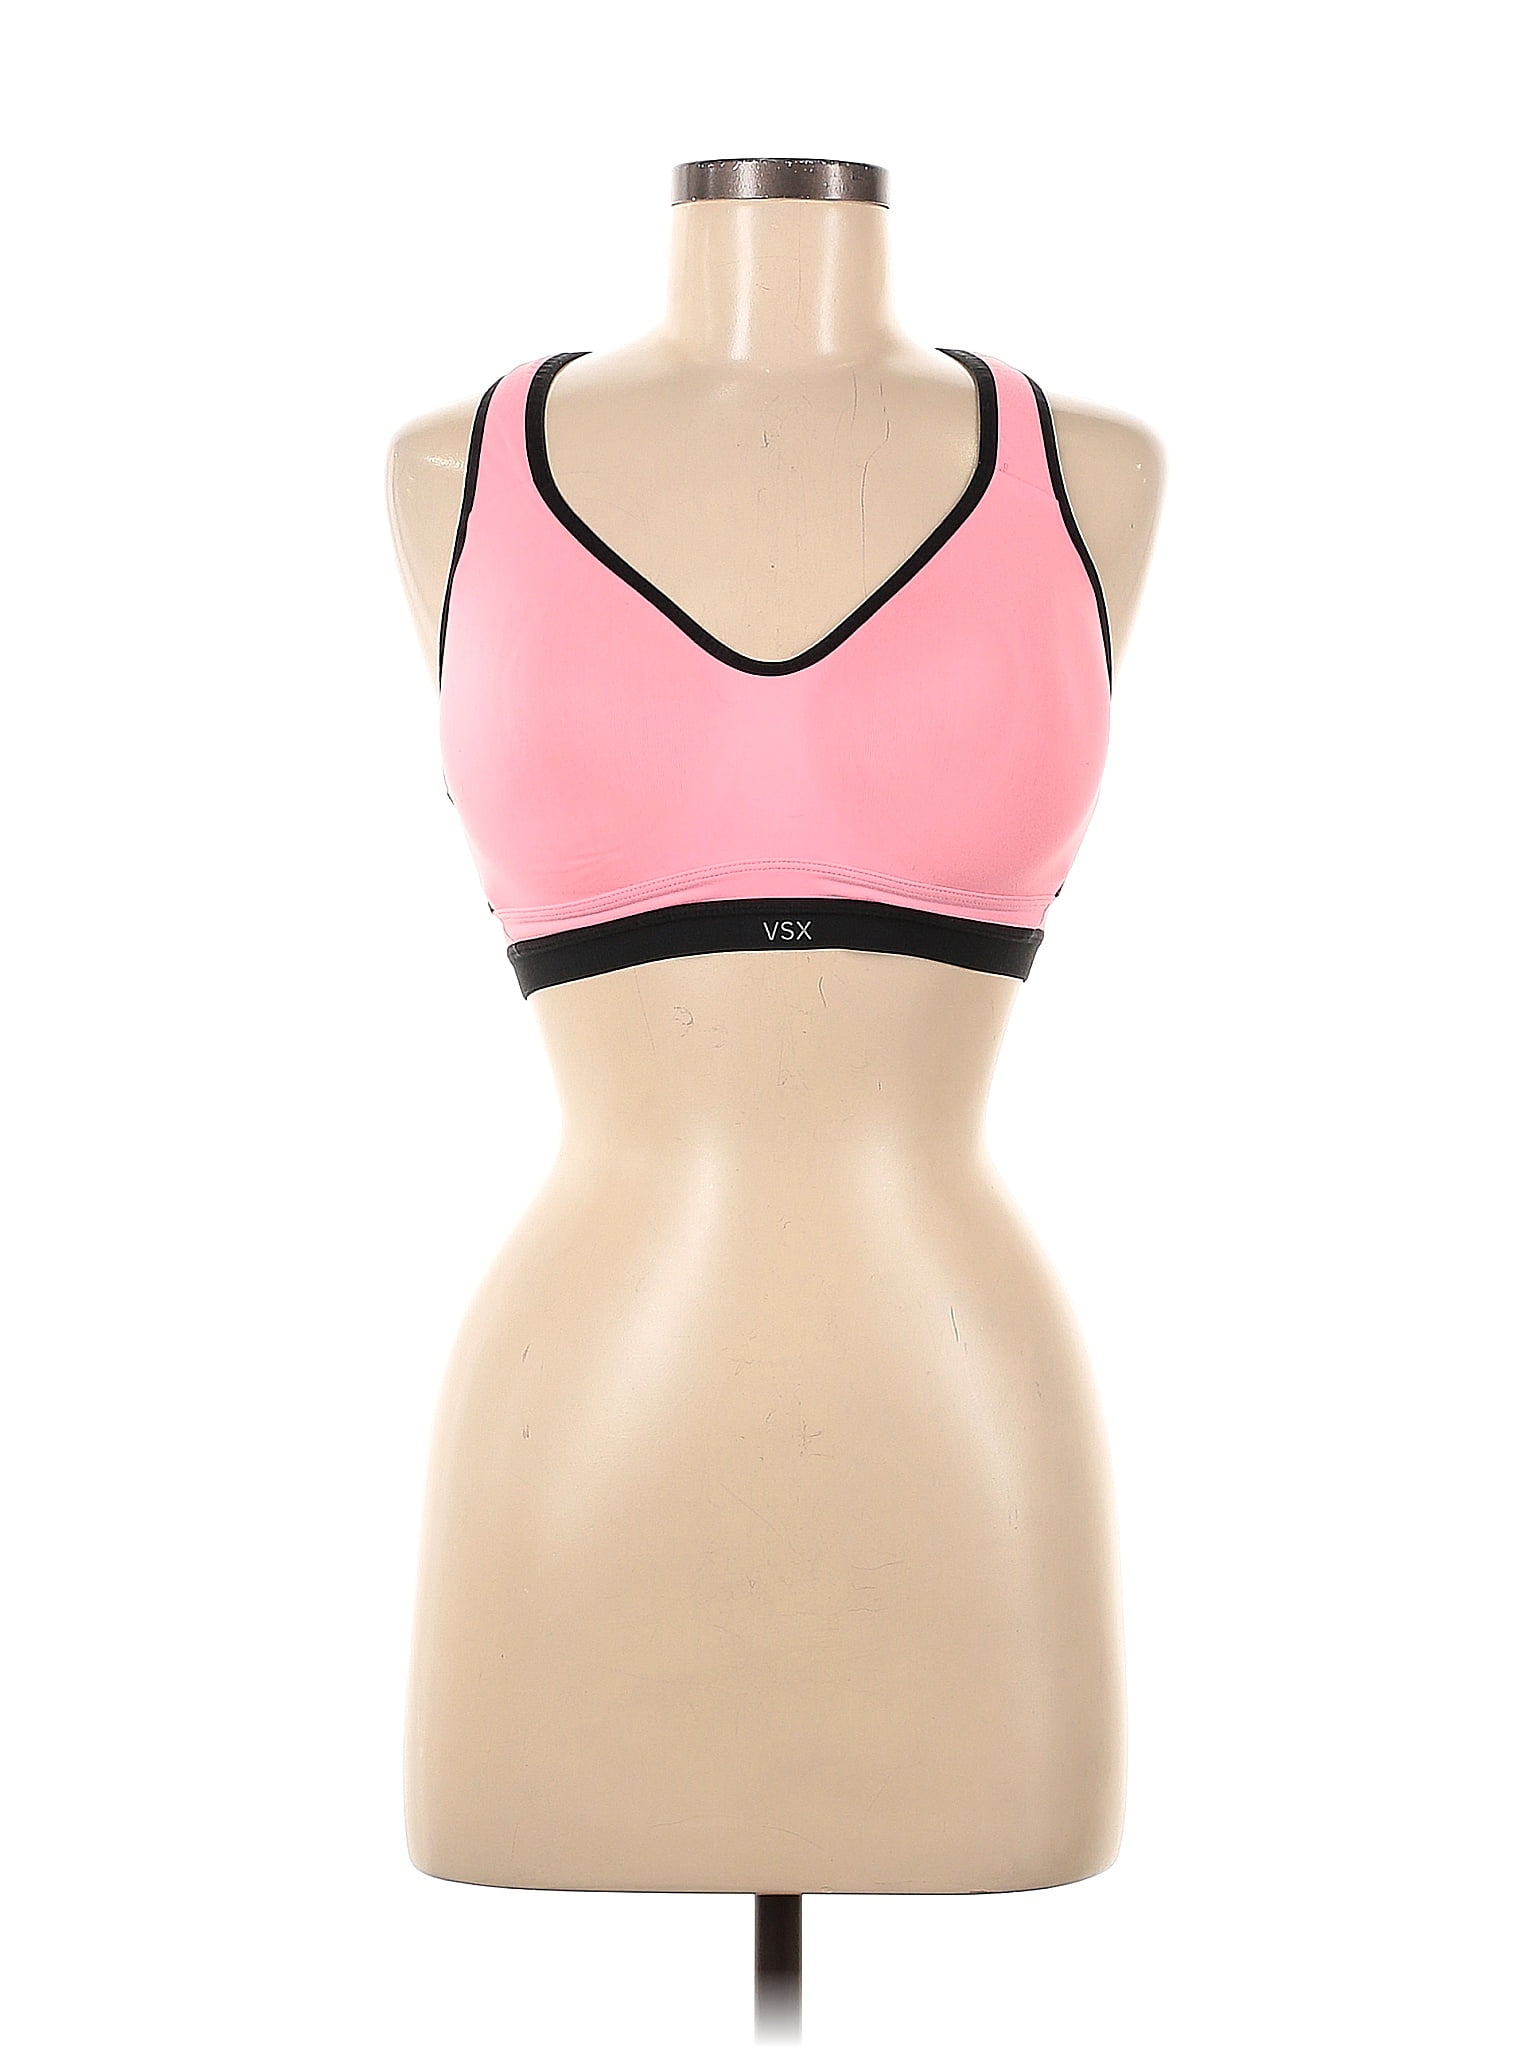 VSX Sport Color Block Pink Sports Bra Size Med (34D) - 59% off